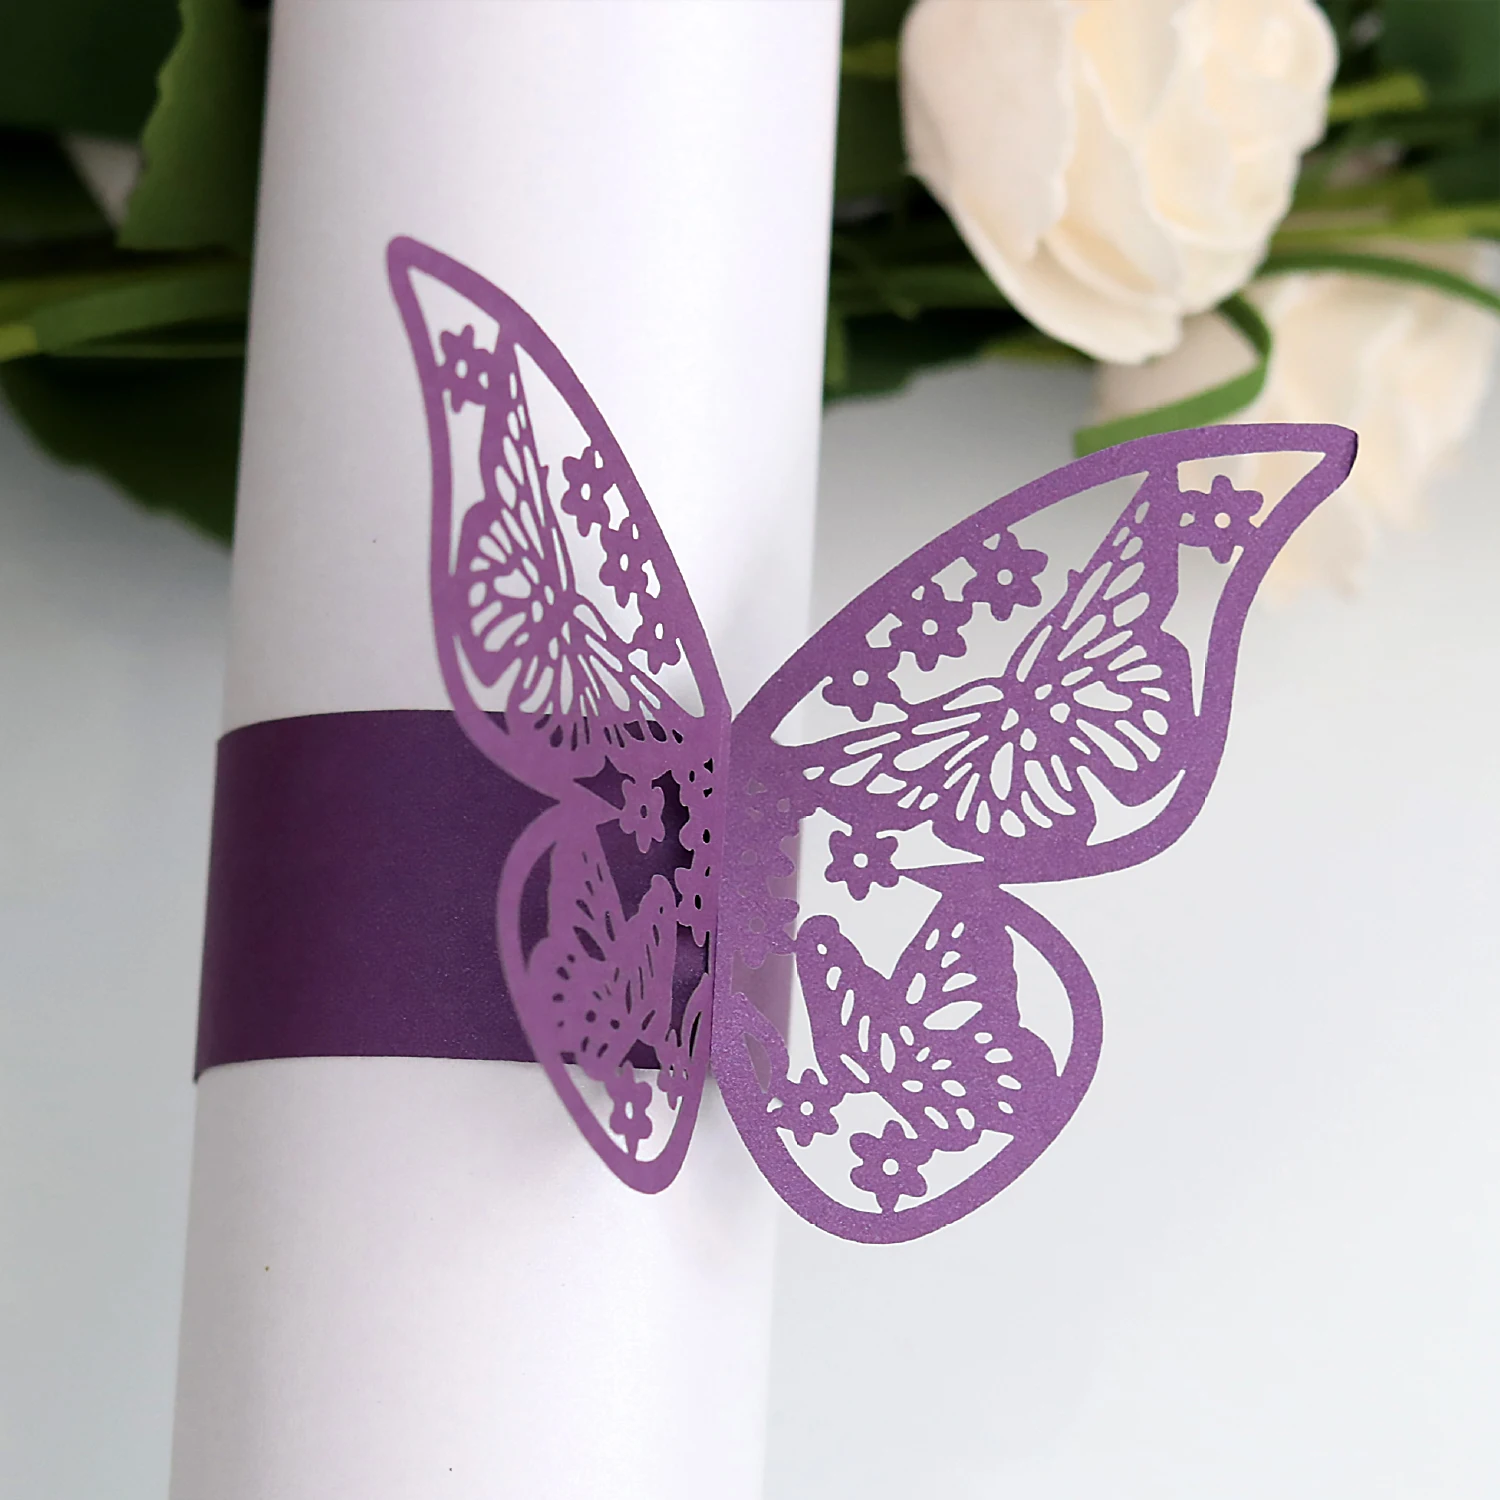 Behogar 50 шт. Элегантные 3D полые бабочки бумажные кольца для салфеток для дома отеля Свадебные украшения для рождественской вечеринки на день